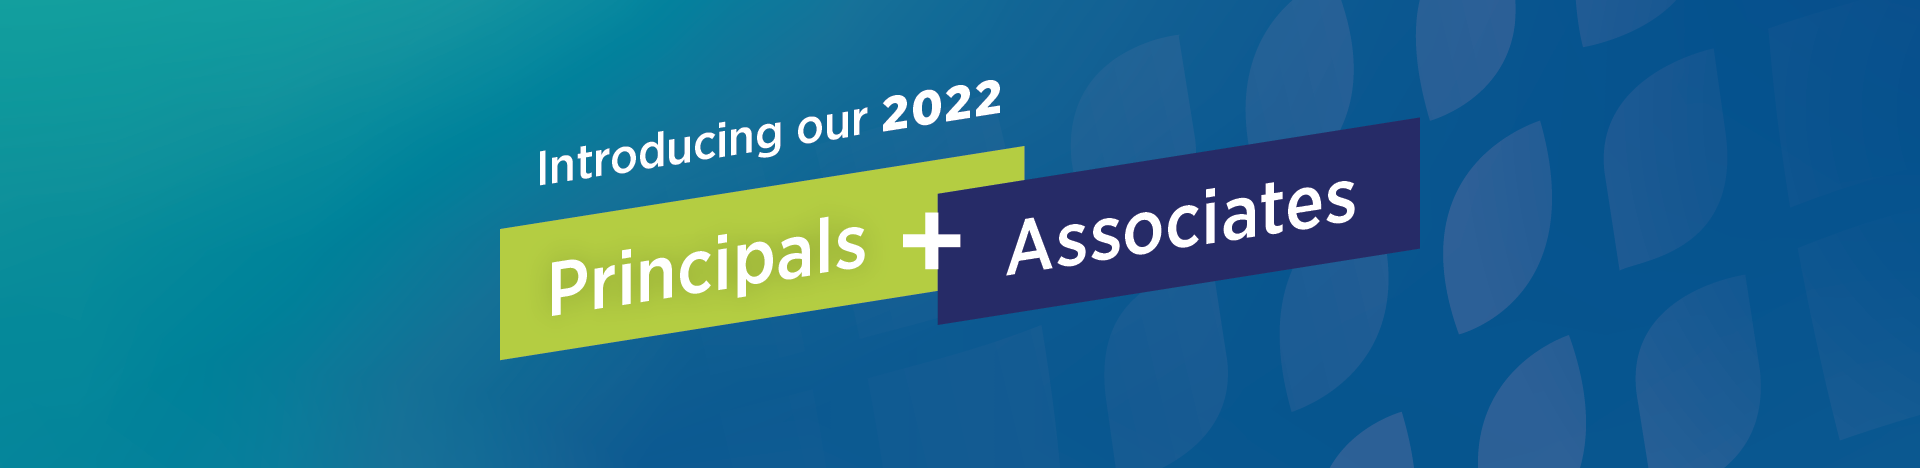 Introducing our 2022 Principals & Associates